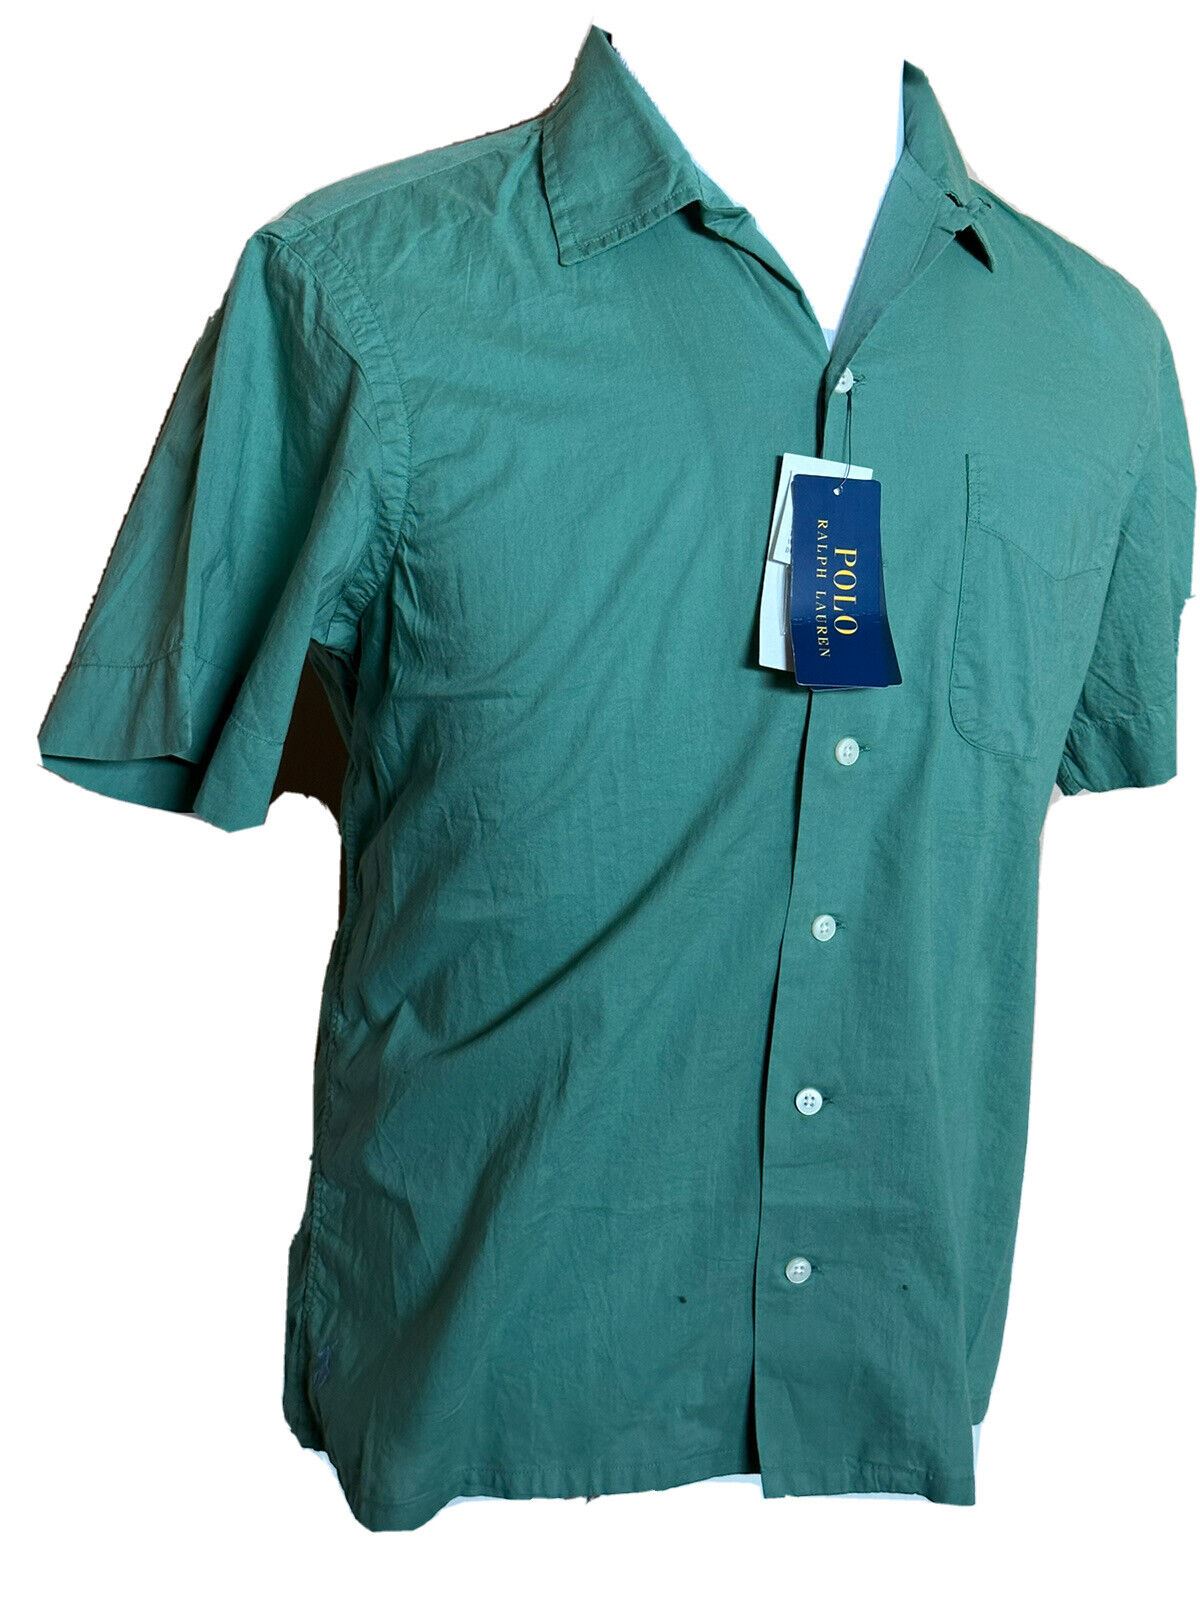 Neu mit Etikett: Polo Ralph Lauren Herren-Hemd, grün, kurzärmelig, Größe 2XL, hergestellt in Indien